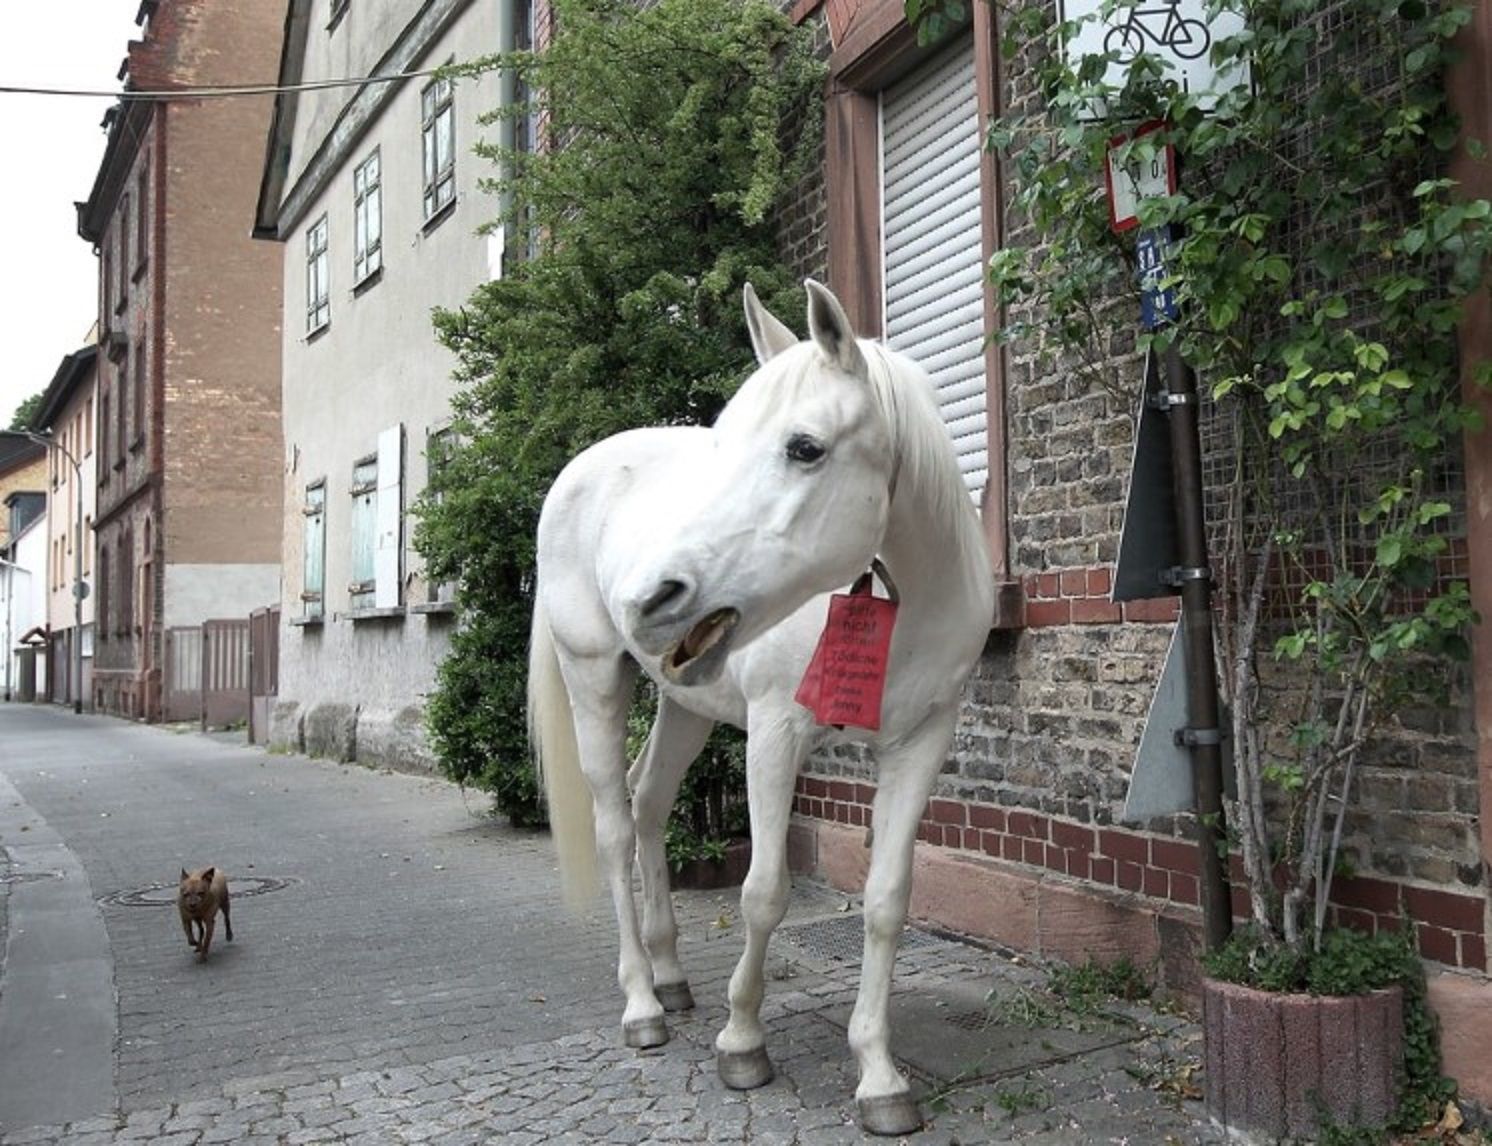 Зворушлива вірність: вже 15 років білий кінь ходить шляхом, яким водив його покійний власник - Pets